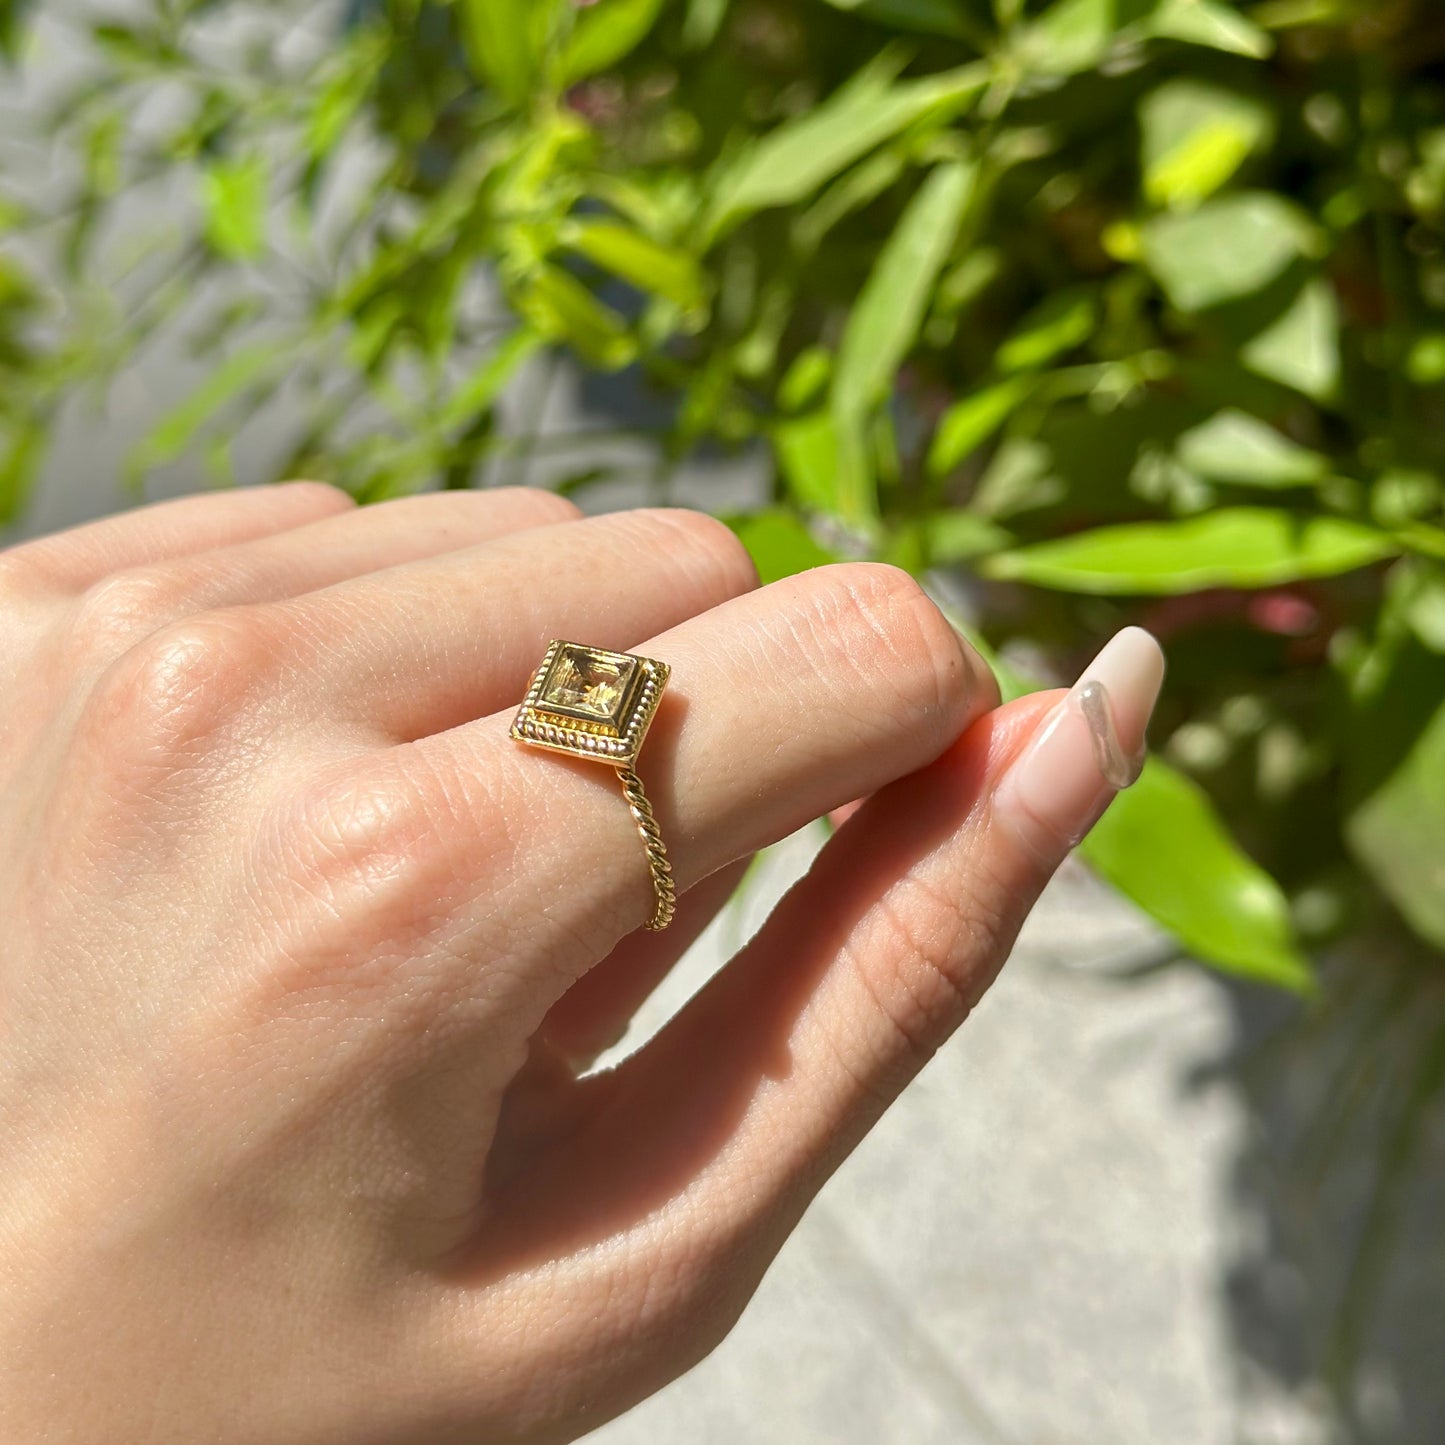 Brass petit ring 12